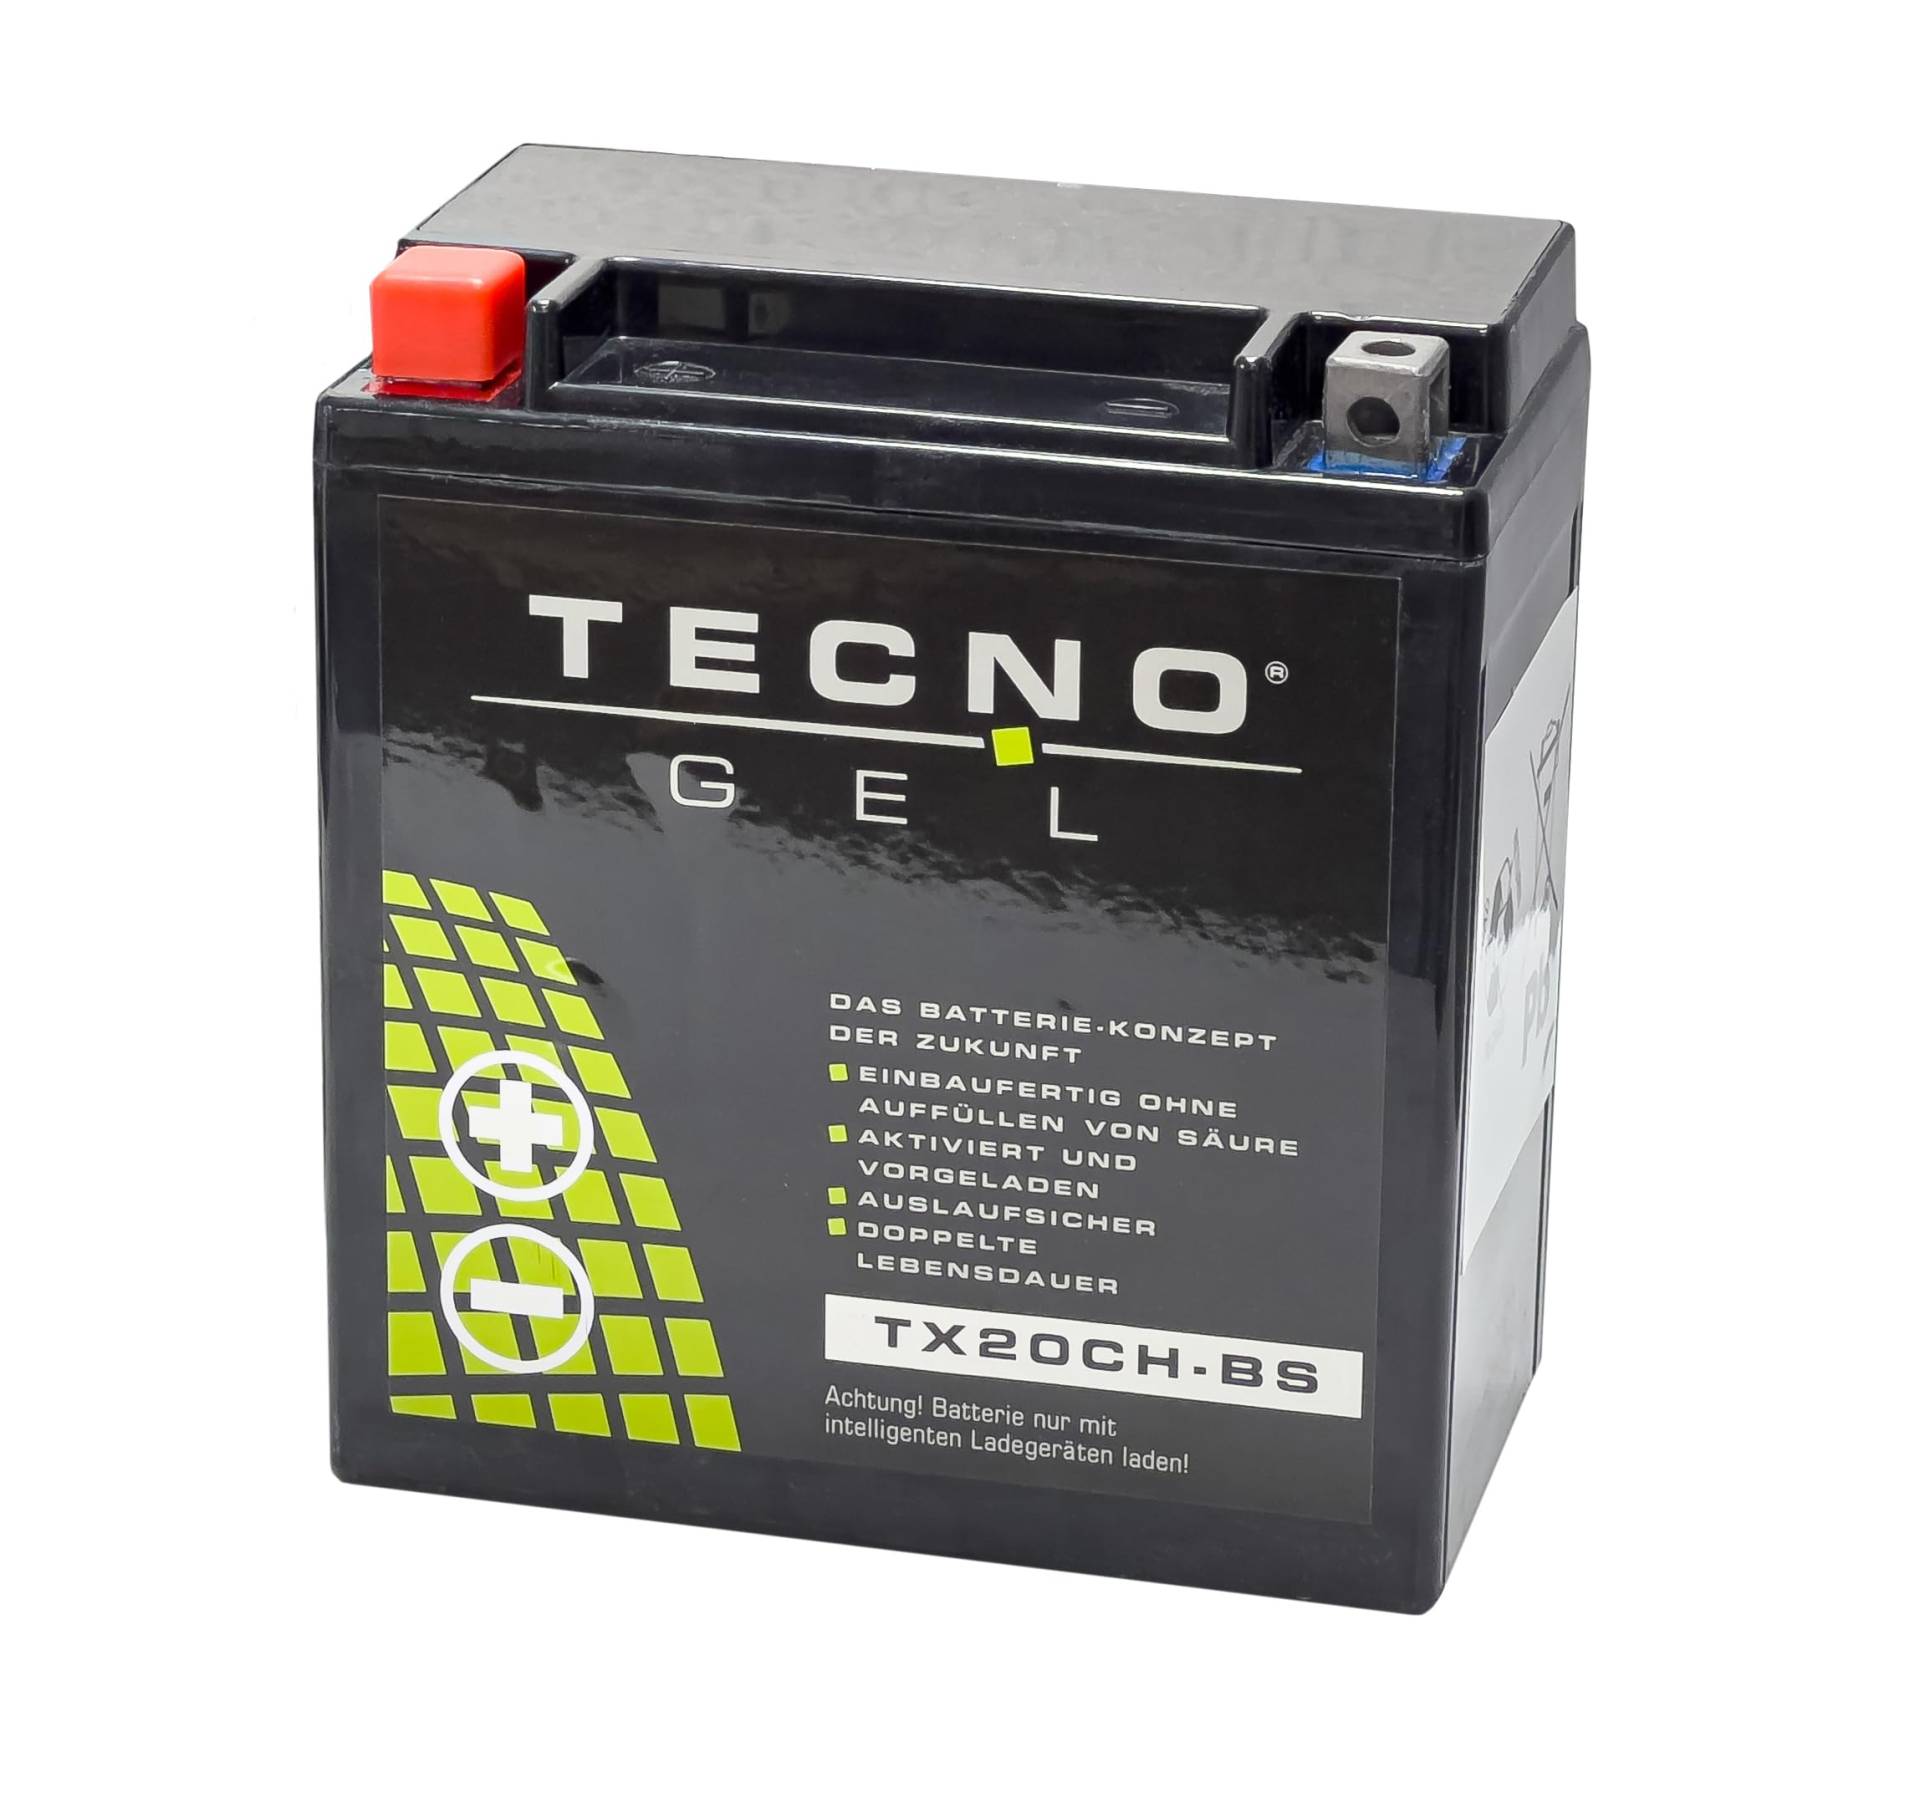 TECNO-GEL Motorrad-Batterie für YTX20CH-BS für MOTO GUZZI Griso 850/1100/1200 2007-2017, 12V Gel-Batterie 18Ah, 150x87x161 mm von Wirth-Federn